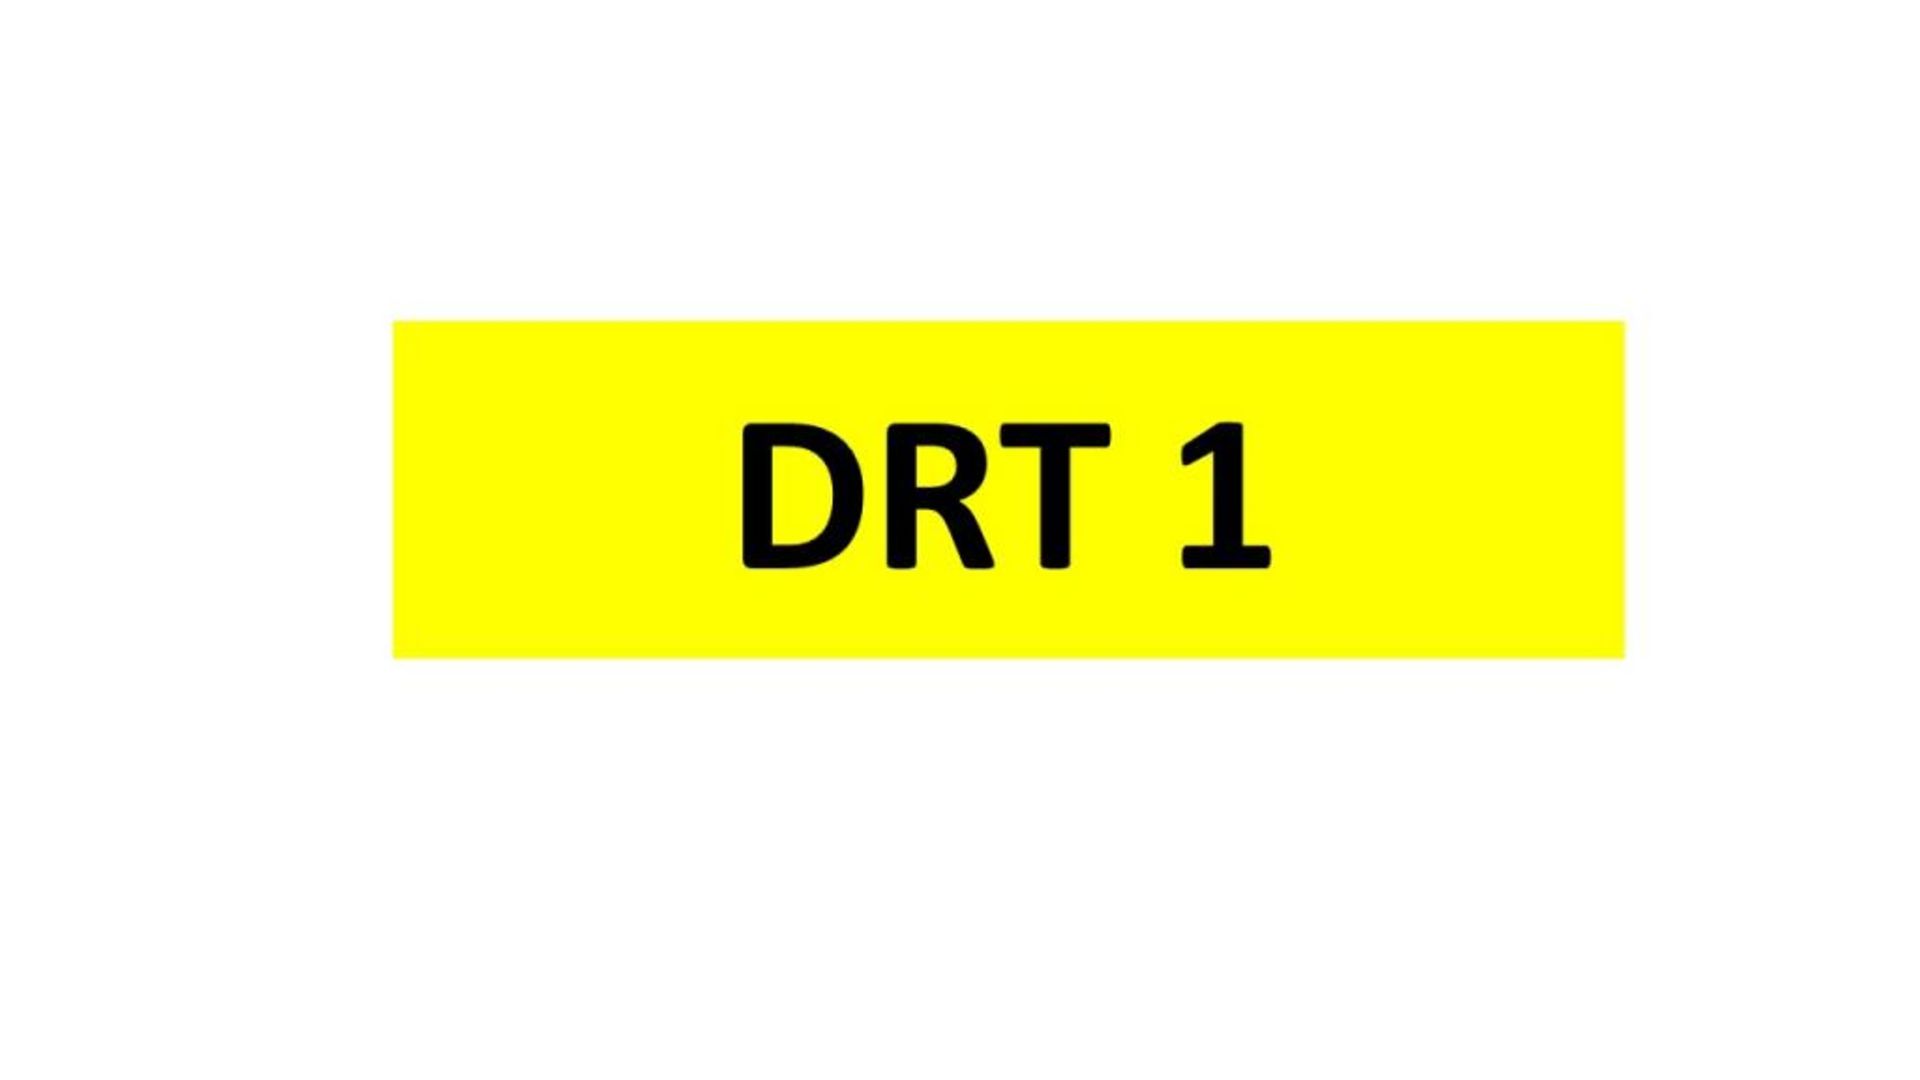 REGISTRATION - DRT 1